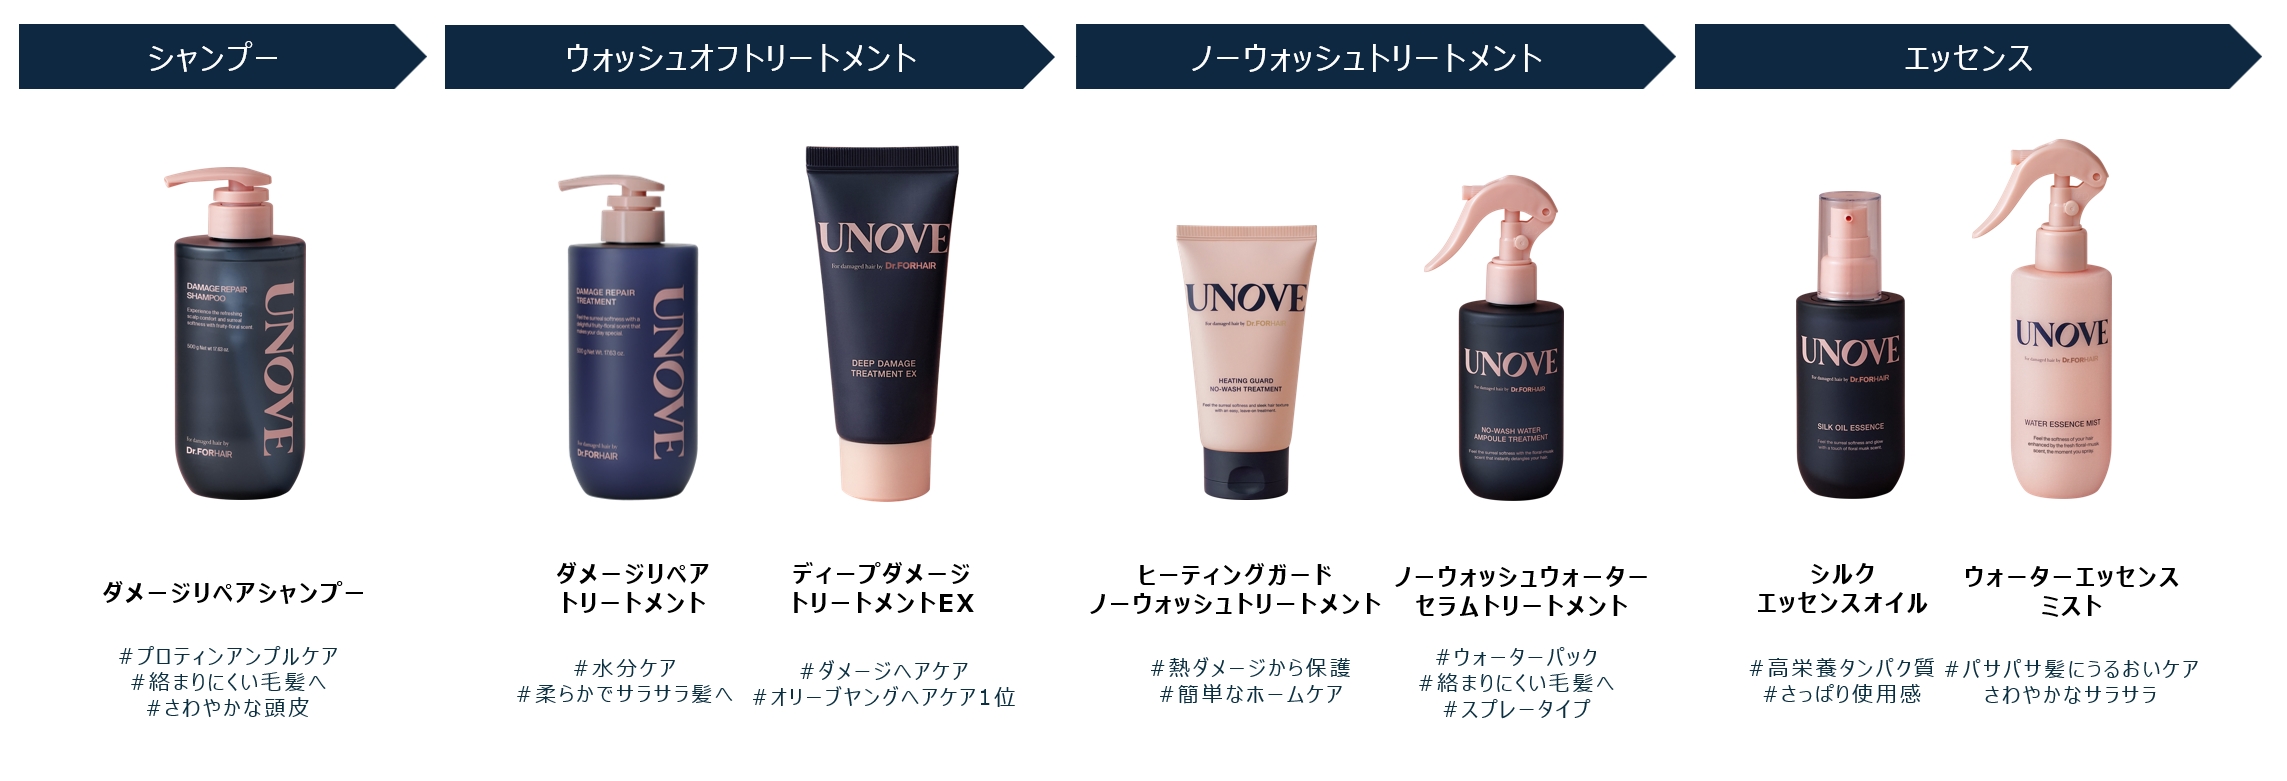 韓国発パーソナルケアブランド「UNOVE」がSEVENTEEN MINGYUをグローバルアンバサダーに任命、「羨望の柔らかさと香りで「私」を解き放つ」キャンペーン後日公開のサブ画像8